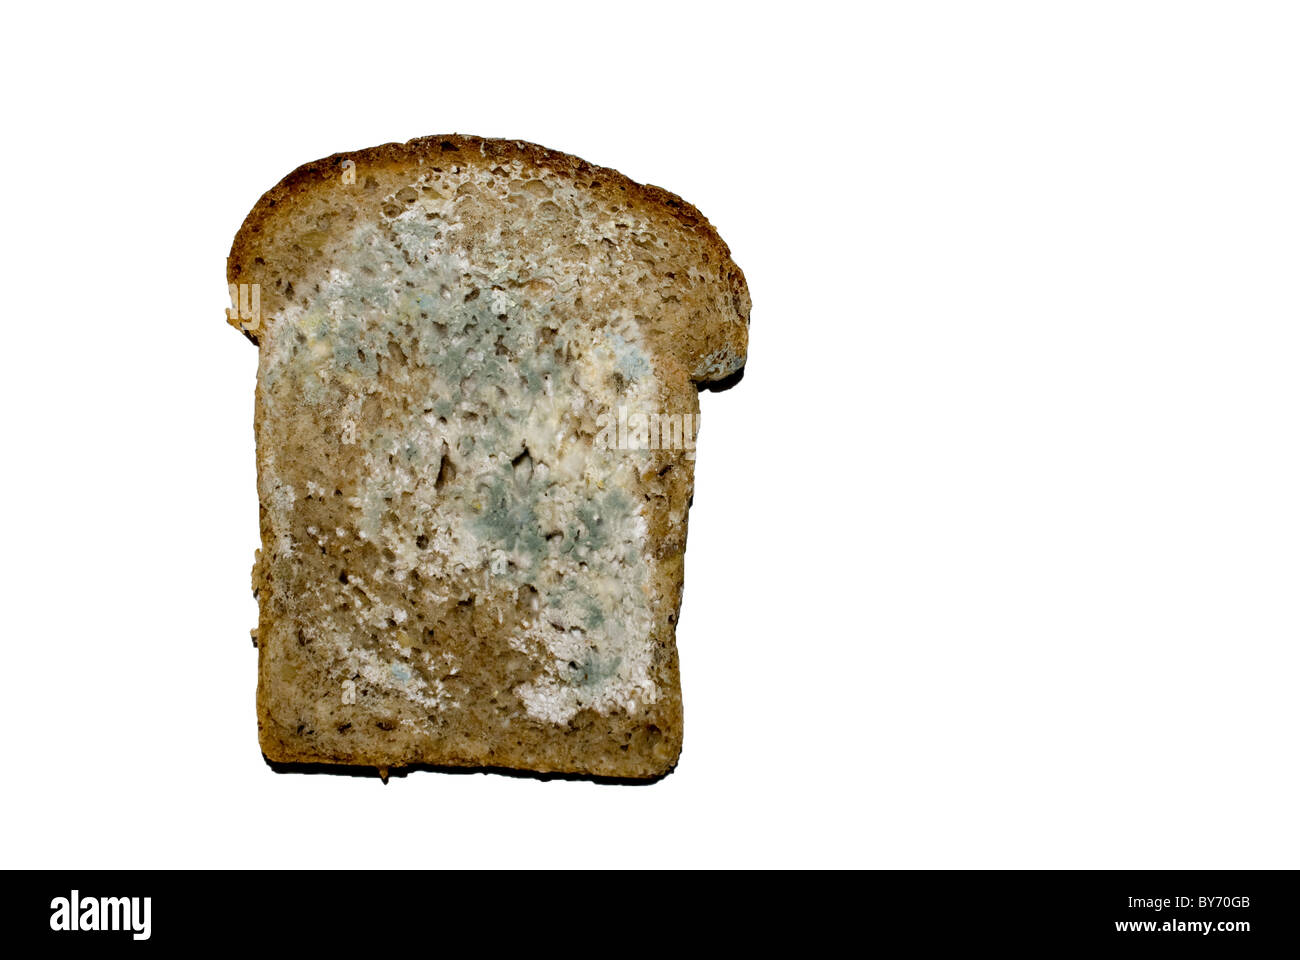 Кусочек хлеба с плесенью. Плесень мукор на хлебе. Черная плесень на хлебе. Плесневелый кусок хлеба. Белая плесень на хлебе.